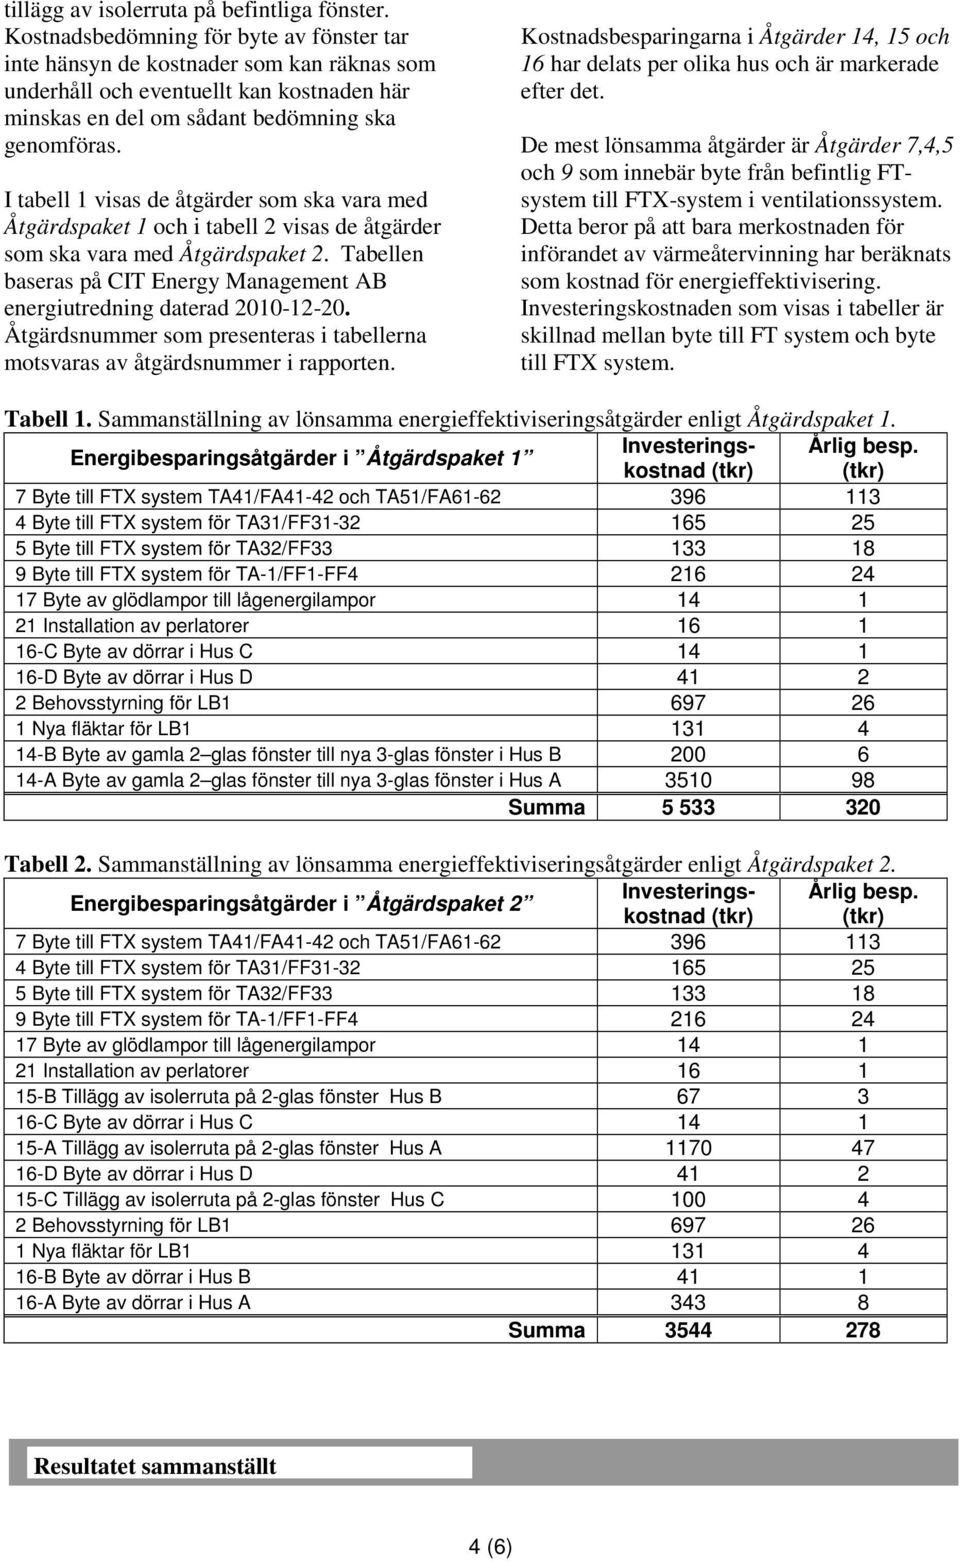 I tabell 1 visas de åtgärder som ska vara med Åtgärdspaket 1 och i tabell 2 visas de åtgärder som ska vara med Åtgärdspaket 2.